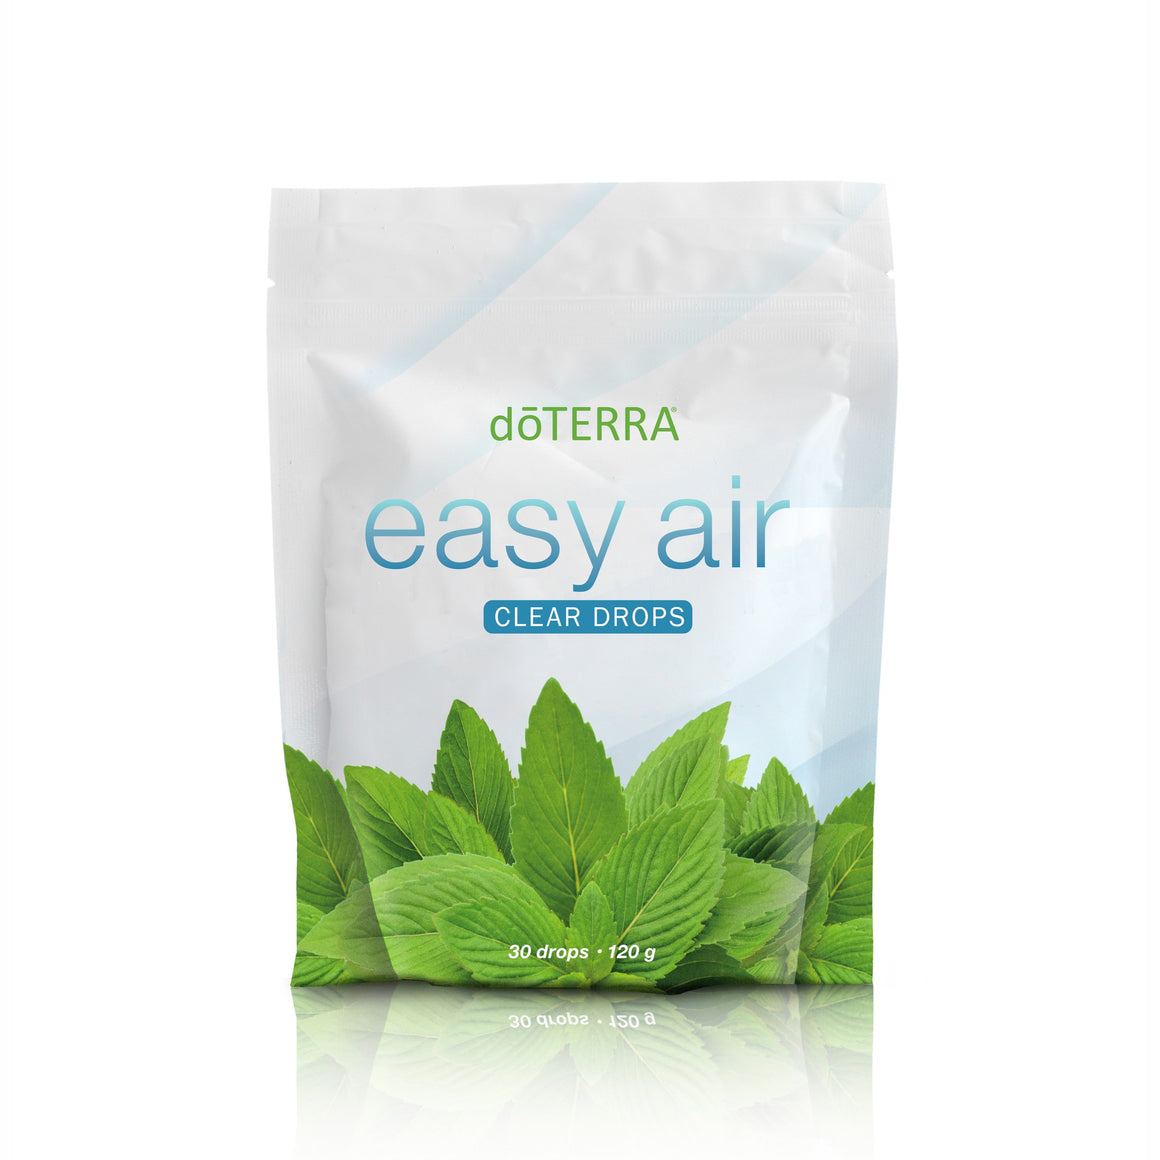 doTERRA easy air clear drops